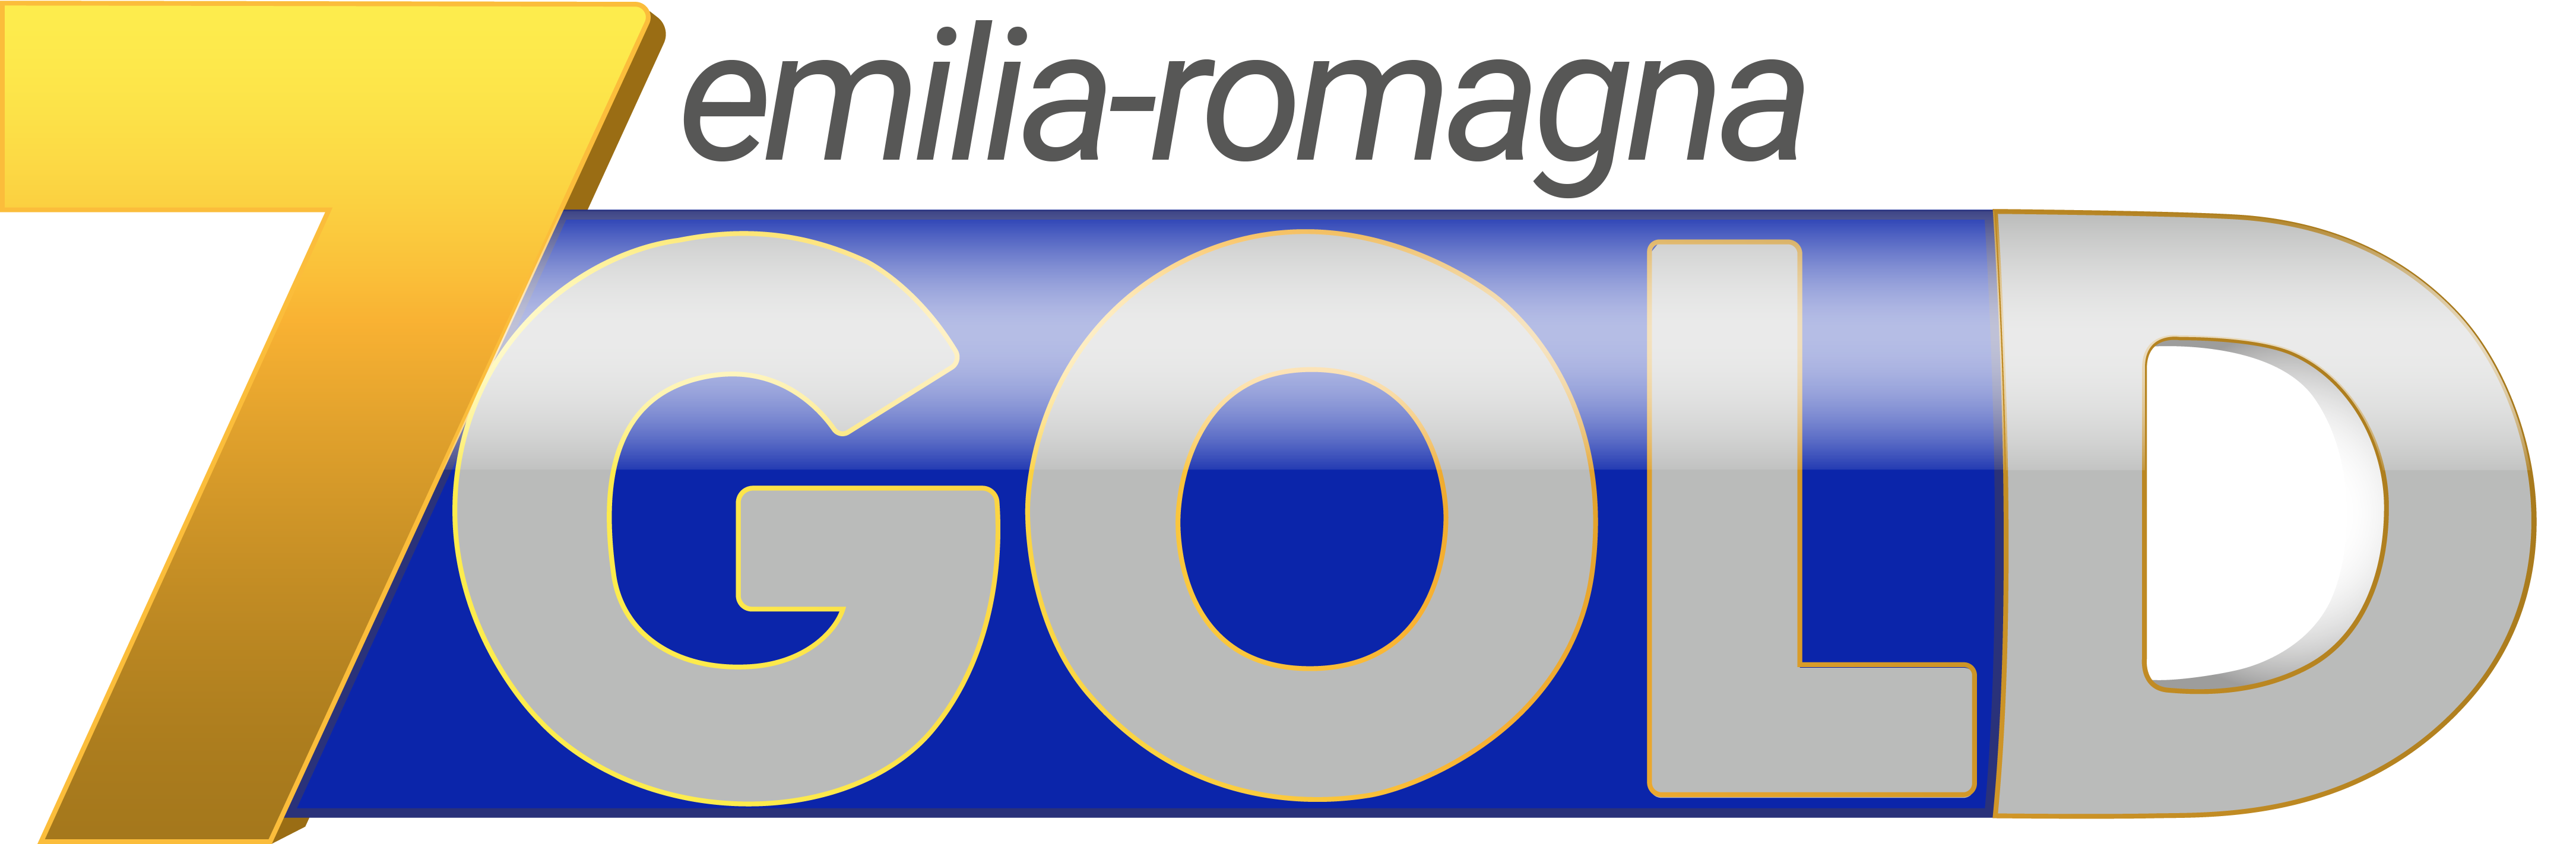 7Gold Emilia-Romagna